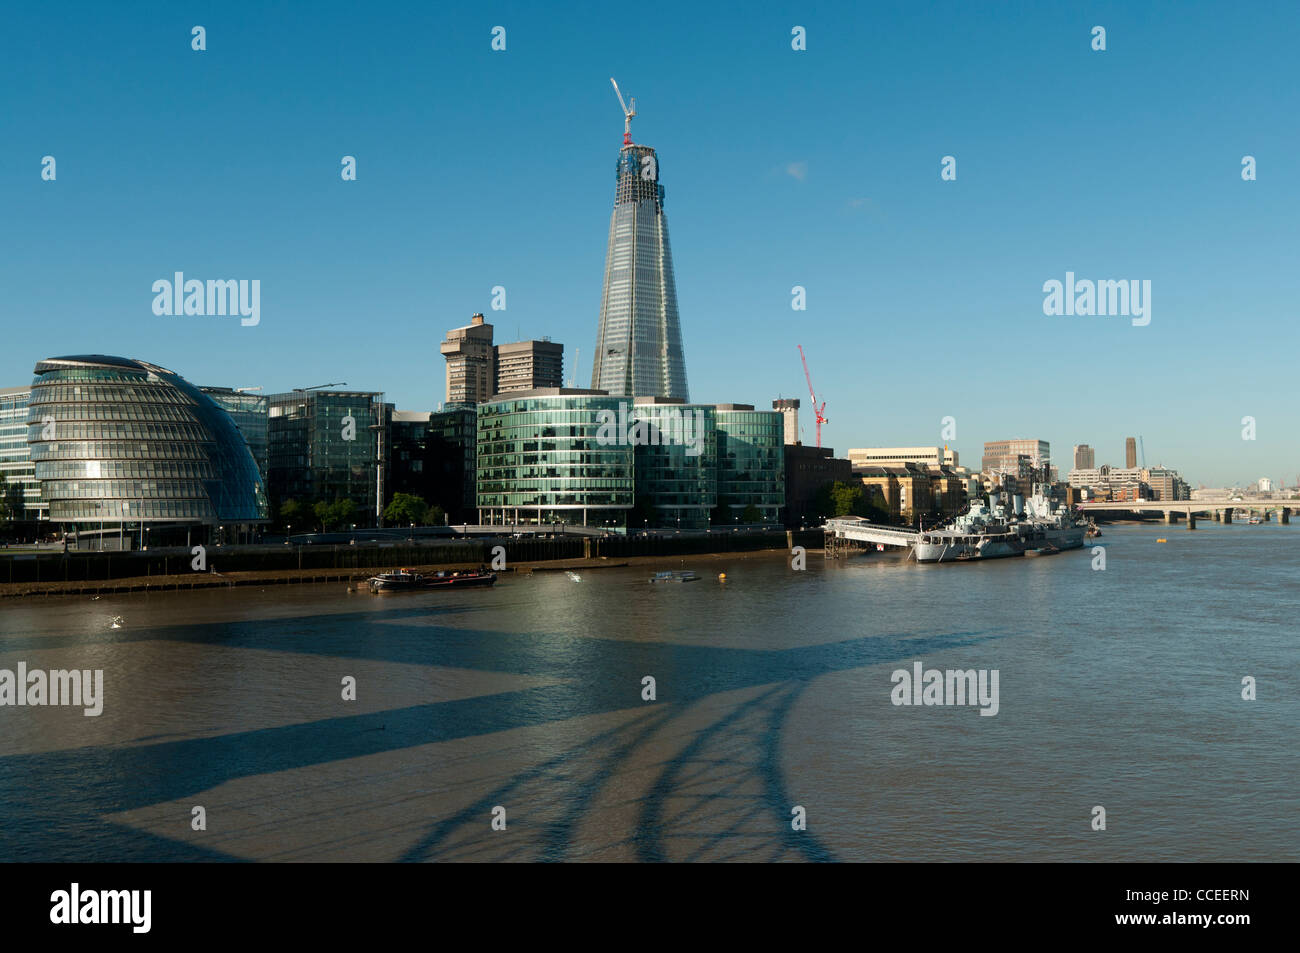 Themse-Blick von der Tower Bridge zeigt, London City Hall, die Scherbe, More London und Hms Belfast, London, UK Stockfoto